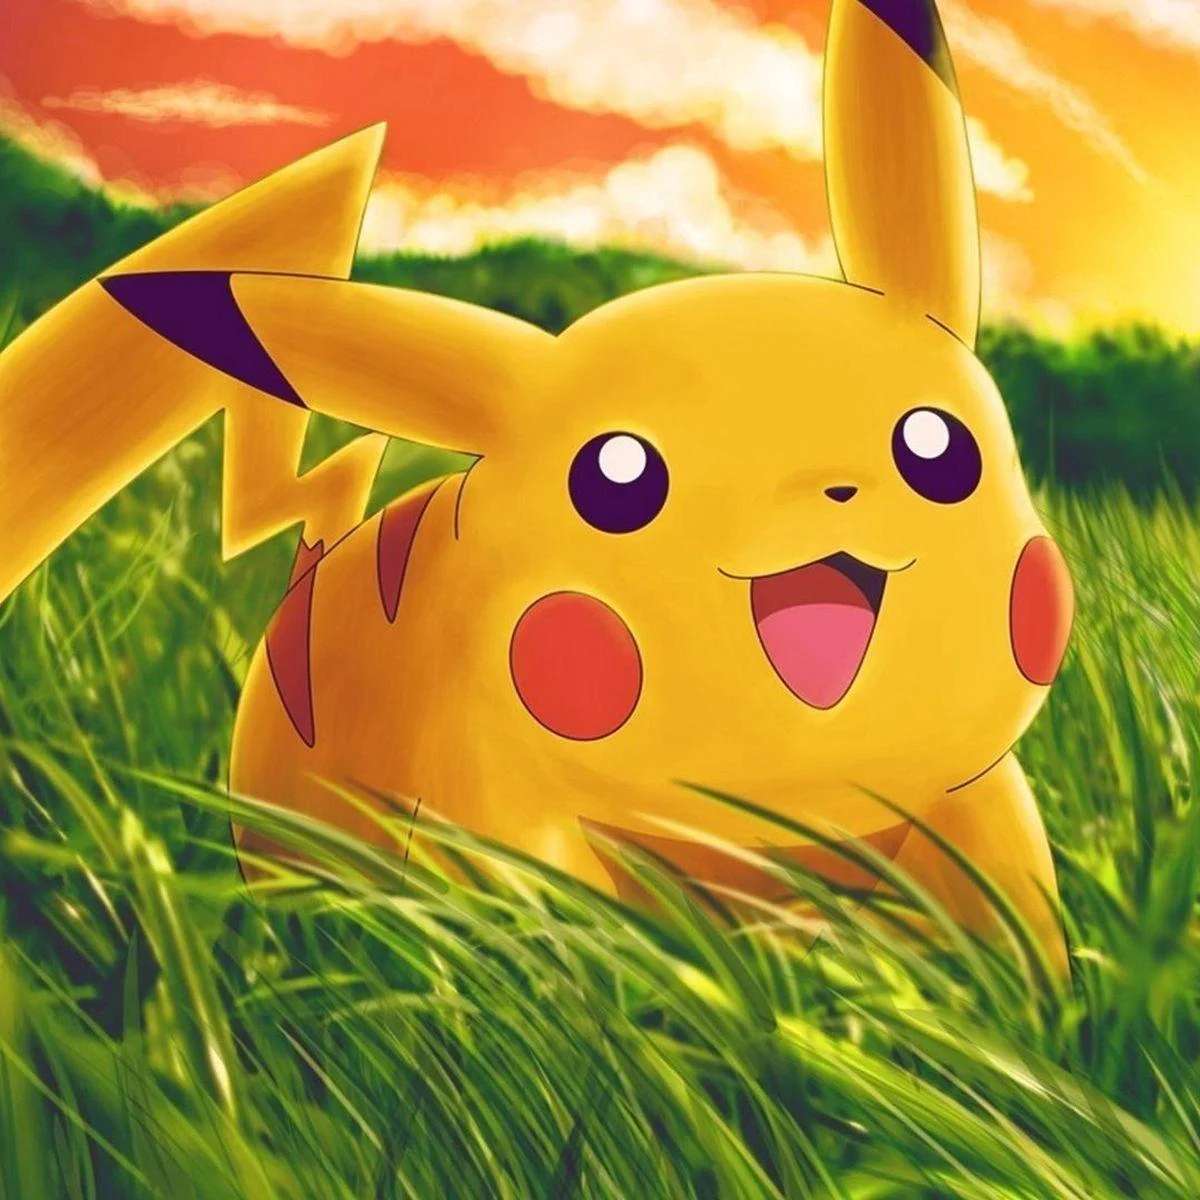 Pikachu (Pokémon) puzzle online